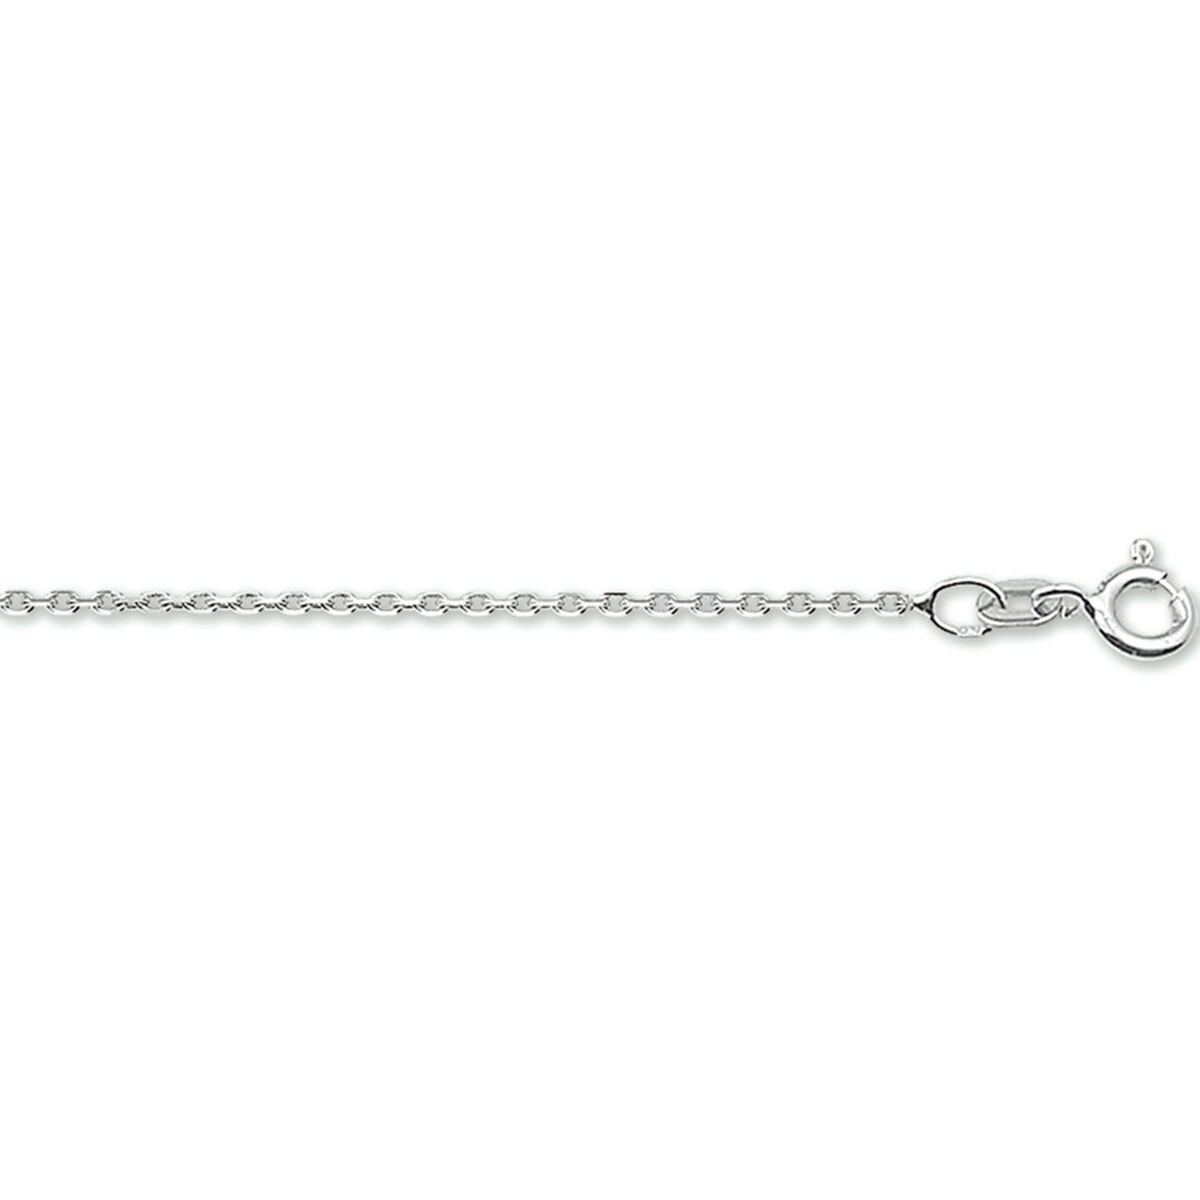 Witgouden ketting - 14karaat – 45cm - uitverkoop Juwelier Verlinden St. Hubert – van €269,= voor 228,=